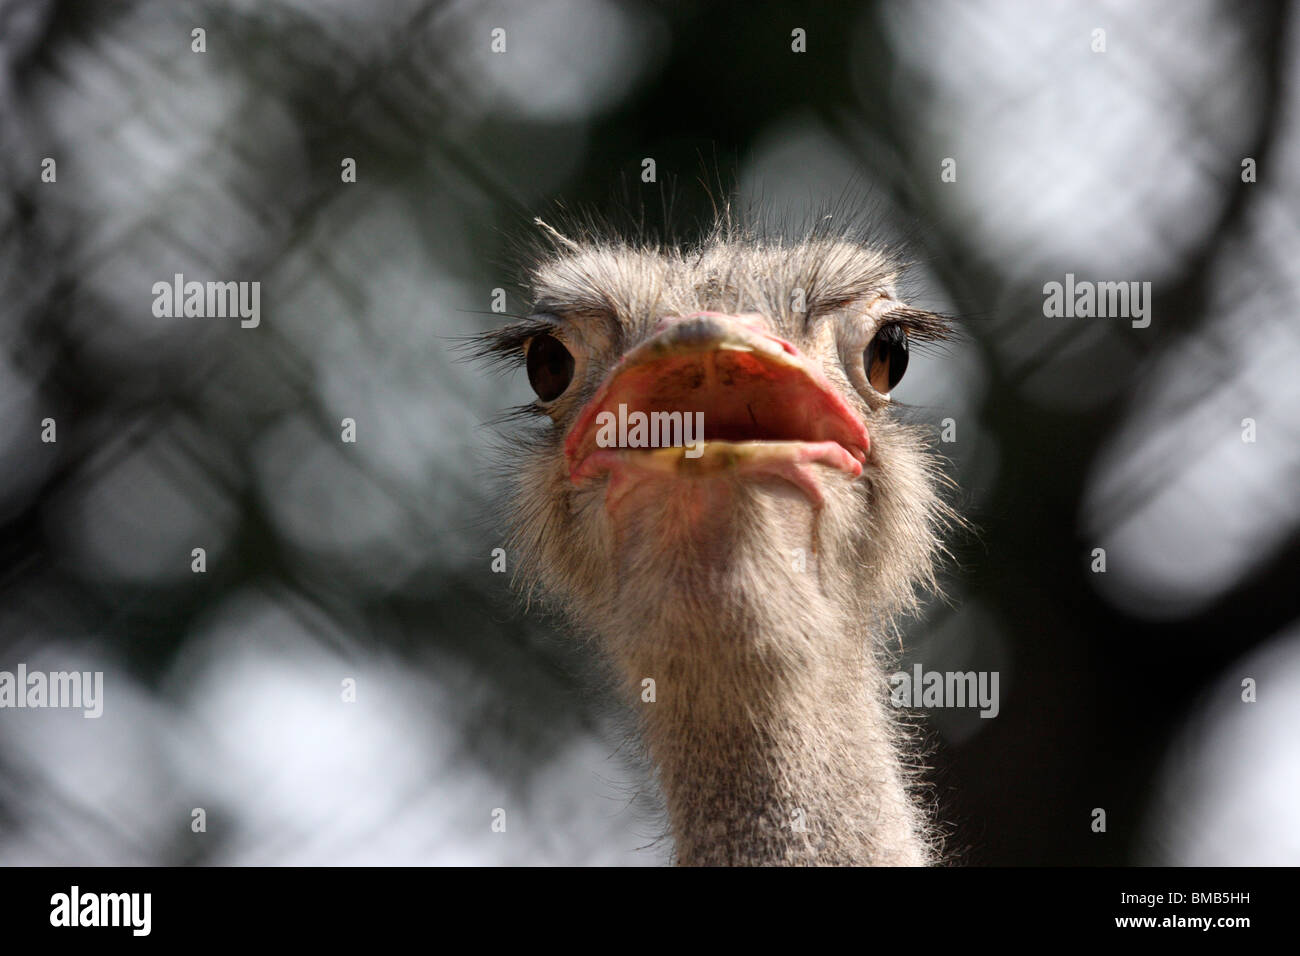 head shot of an ostrich Stock Photo